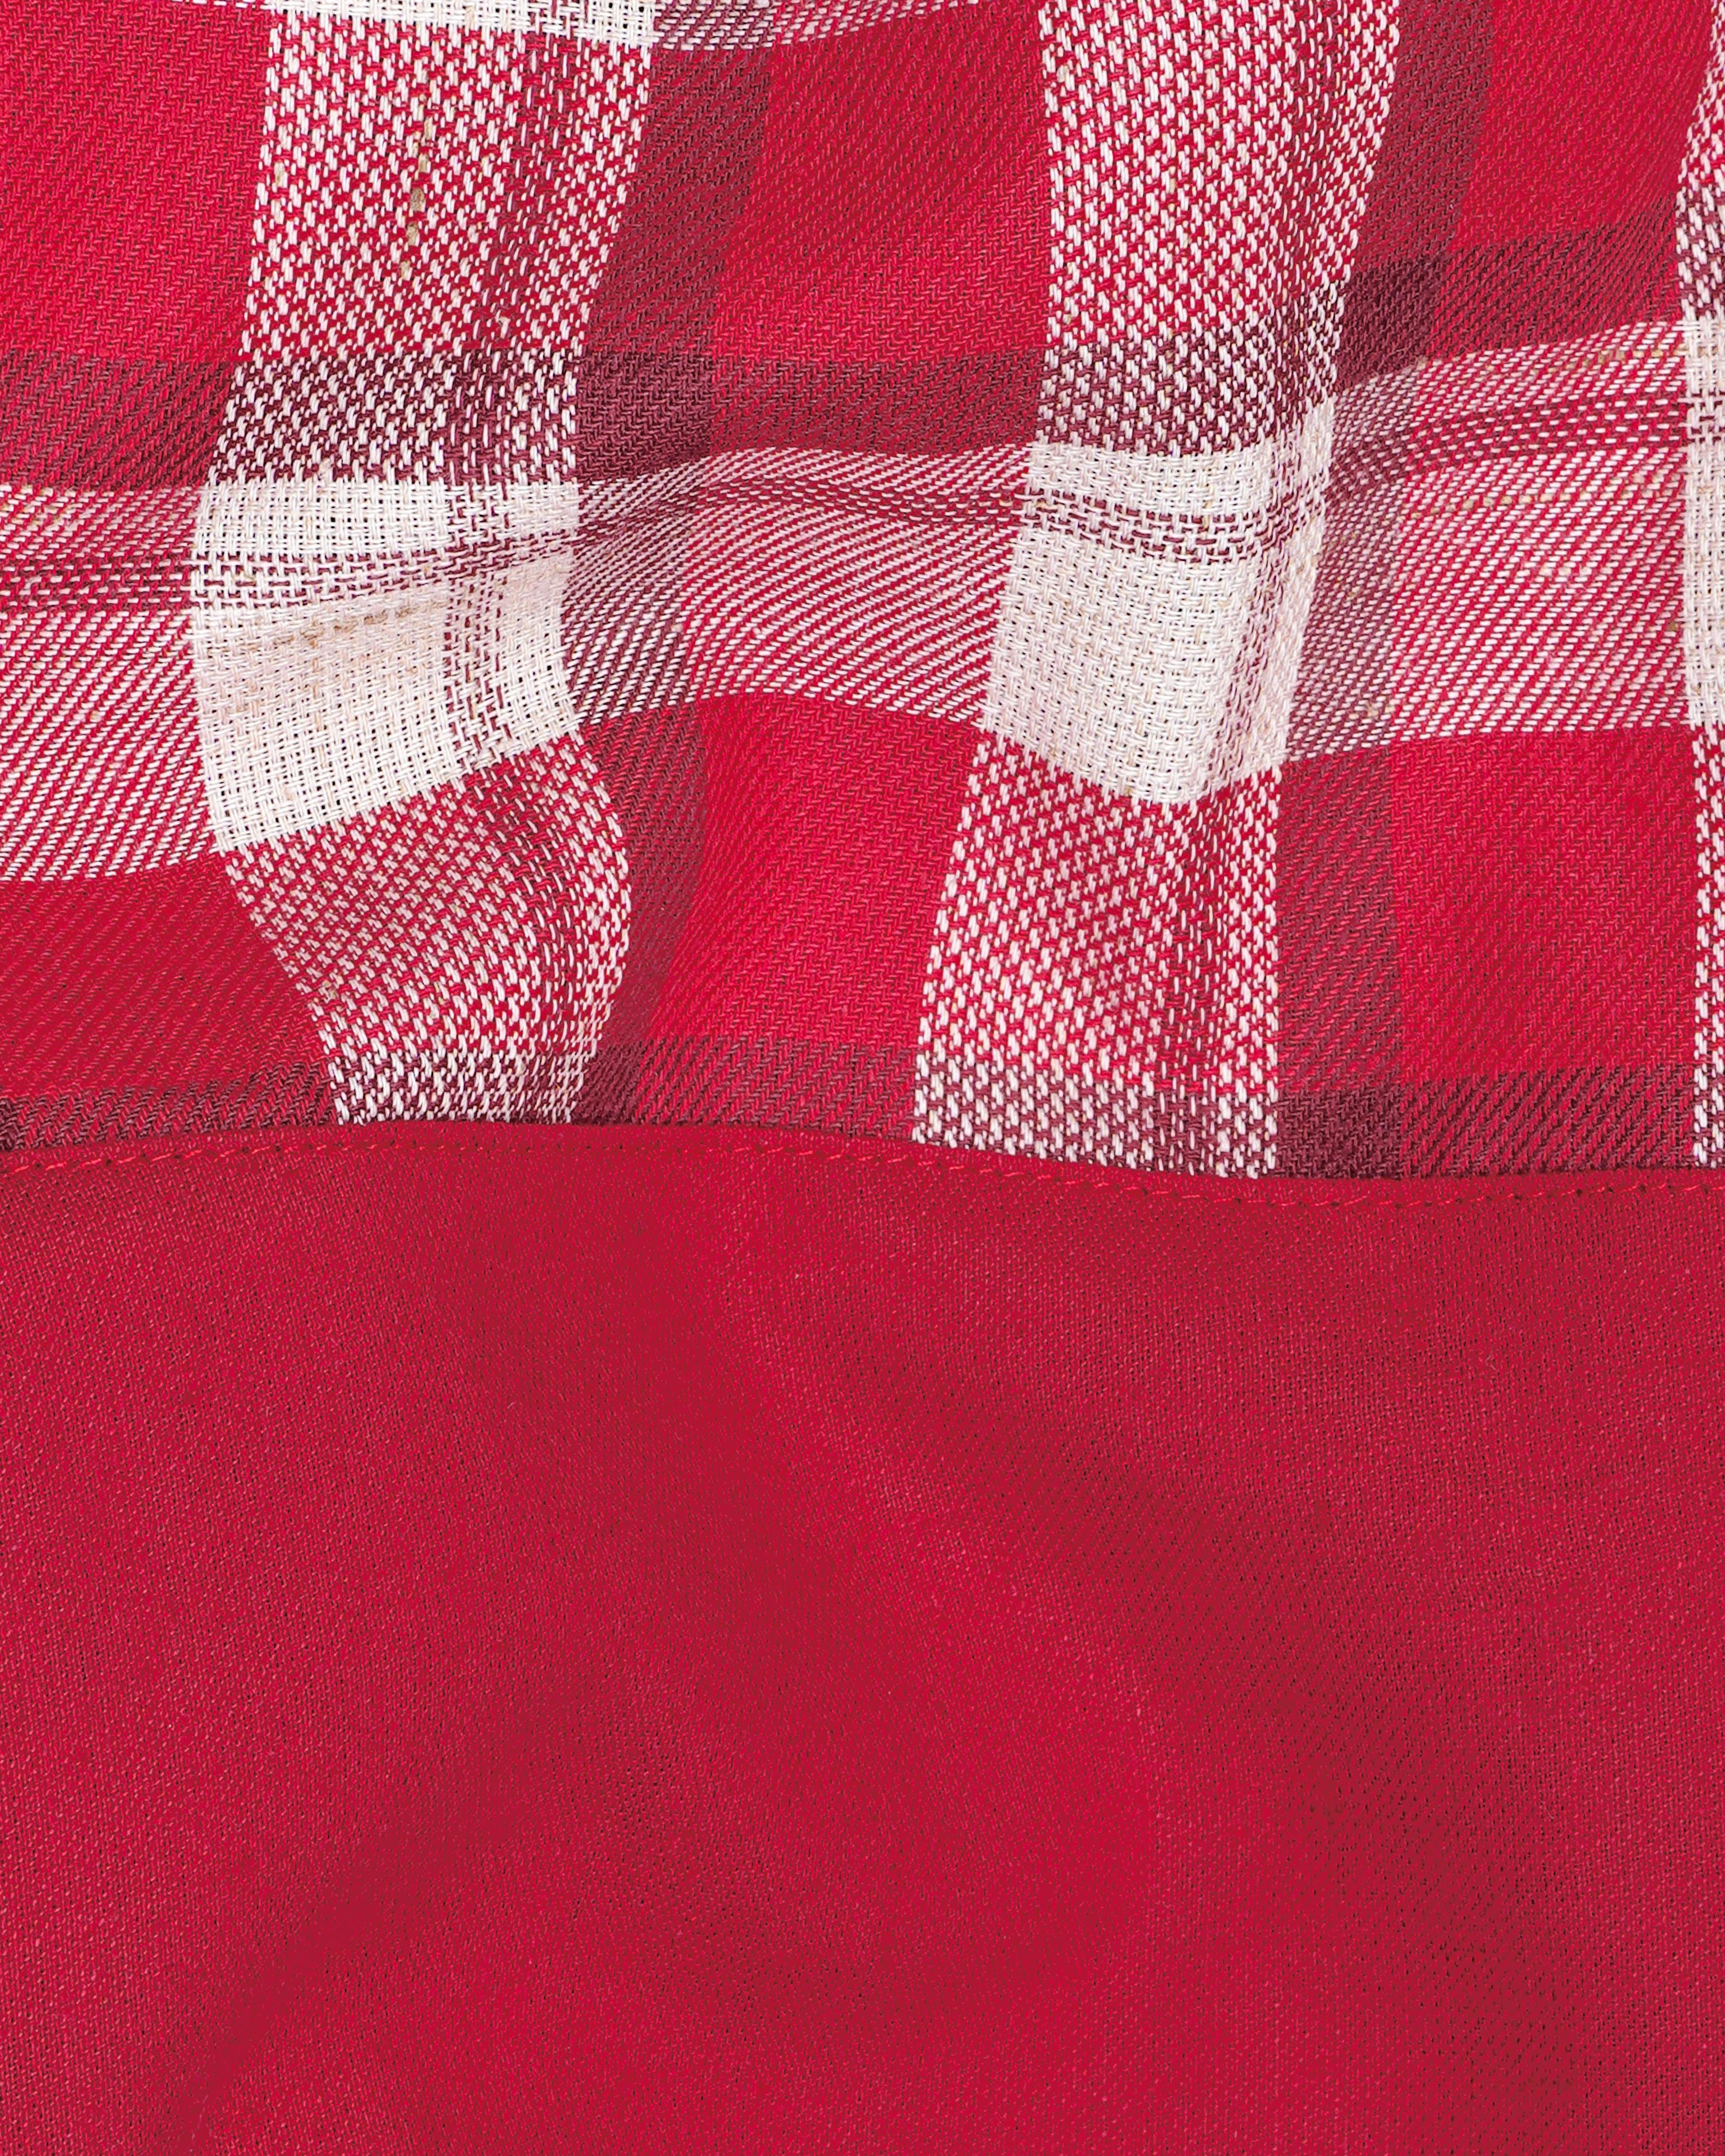 Cardinal Red and White Checked Dobby Textured Premium Giza Cotton Designer Shirt 8200-P113 -38,8200-P113 -H-38,8200-P113 -39,8200-P113 -H-39,8200-P113 -40,8200-P113 -H-40,8200-P113 -42,8200-P113 -H-42,8200-P113 -44,8200-P113 -H-44,8200-P113 -46,8200-P113 -H-46,8200-P113 -48,8200-P113 -H-48,8200-P113 -50,8200-P113 -H-50,8200-P113 -52,8200-P113 -H-52